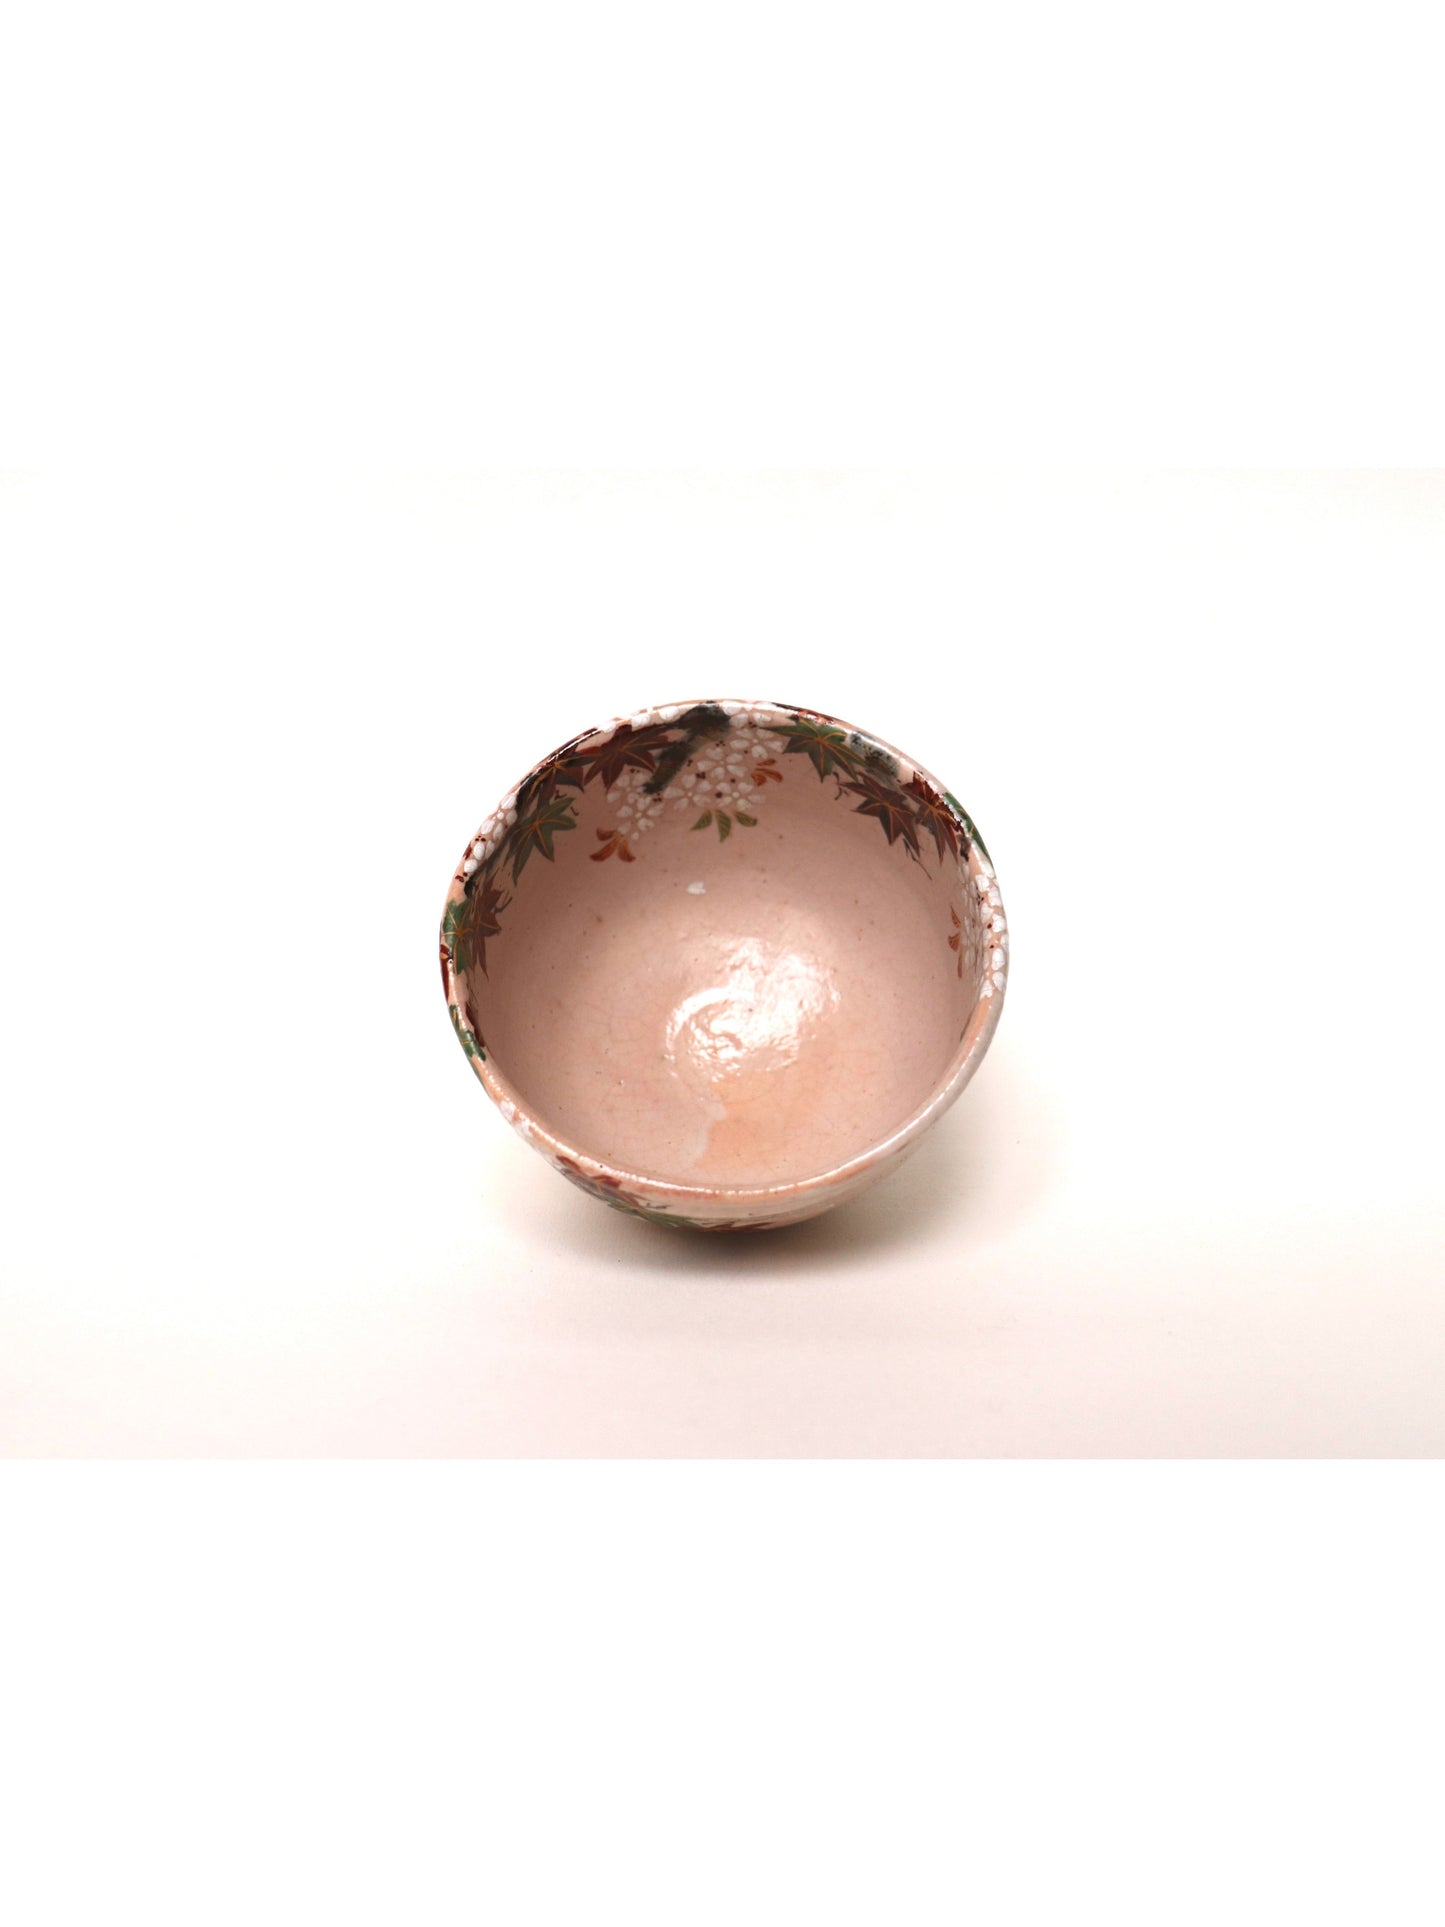 Matcha bowl / Kyo-yaki "Unkin"